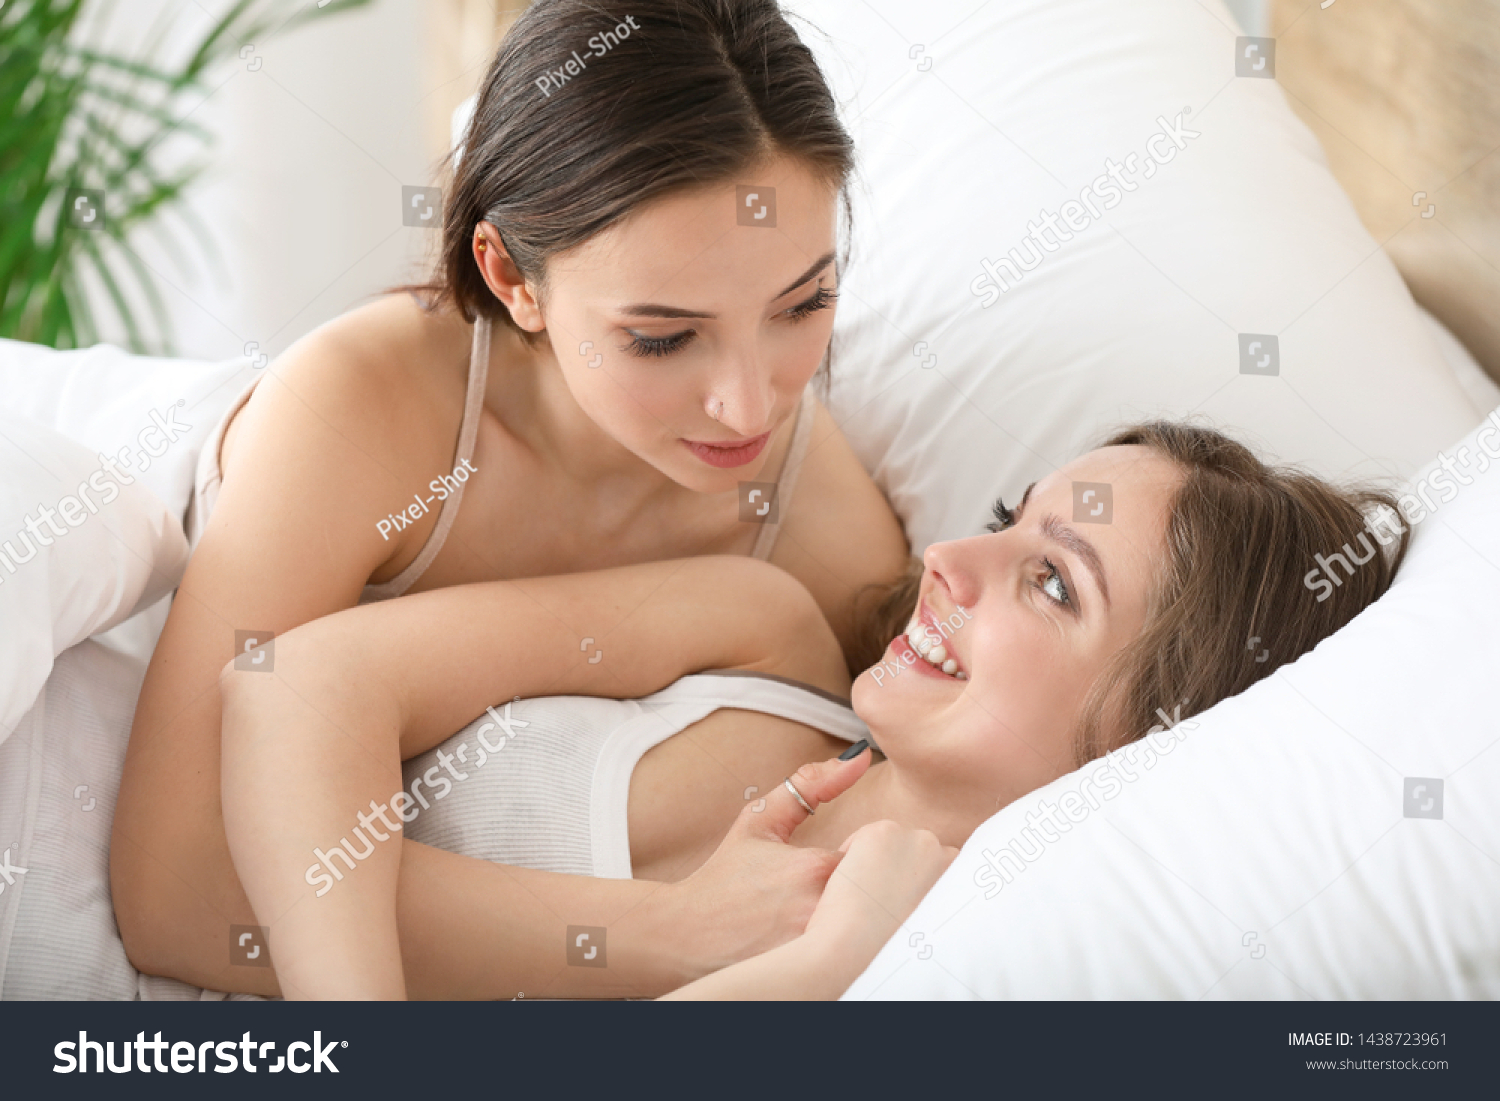 Две молодые лесбиянки лежат на постели и светят большими титьками